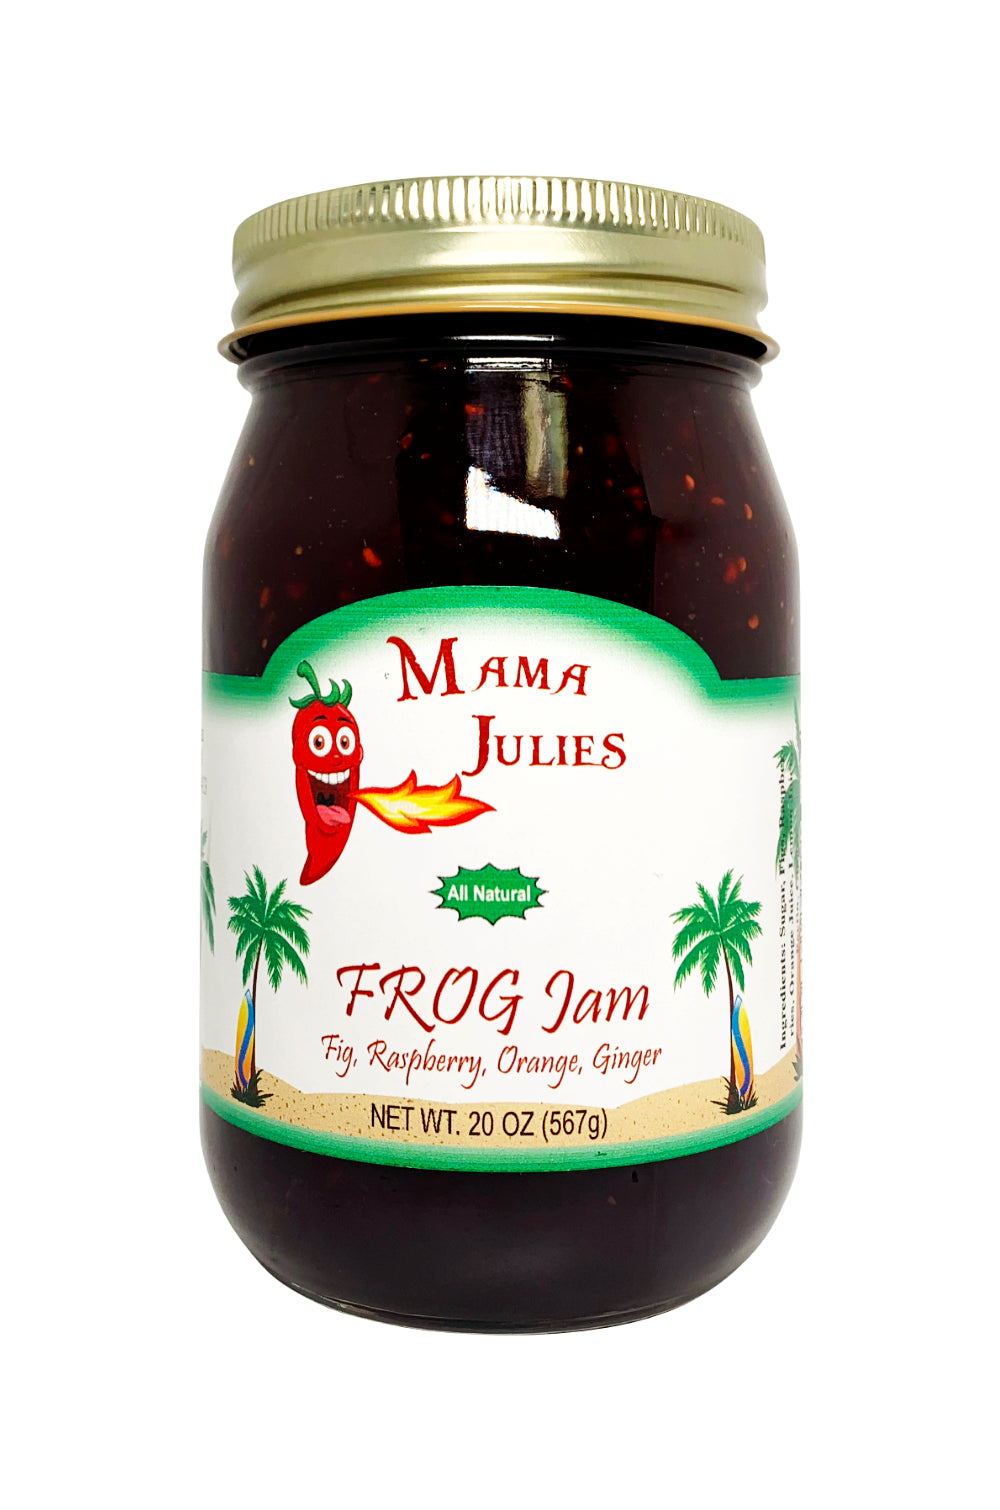 Mama Julies FROG Jam